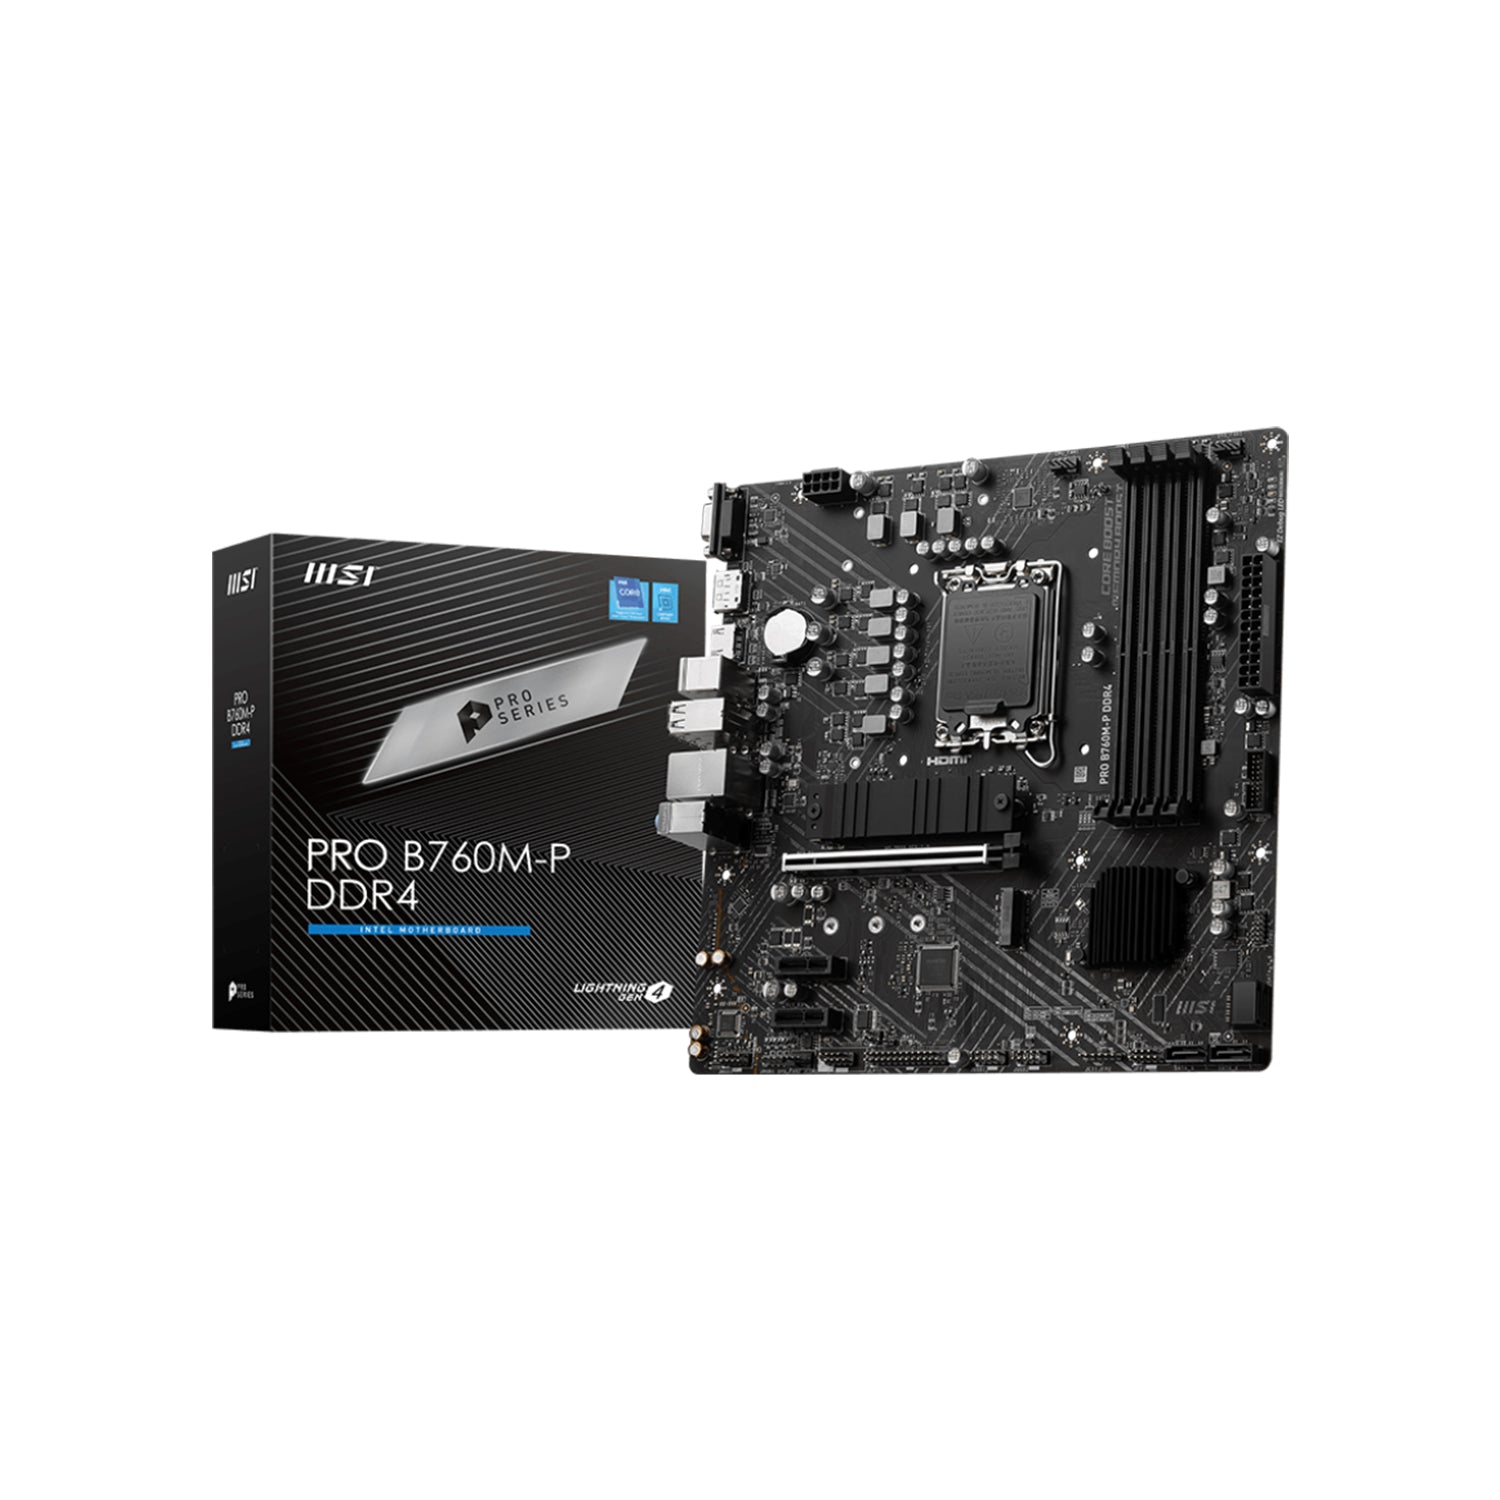 MSI PRO B760M-P DDR4 Series Professional Motherboard (Supports 12th/13th/14th Gen Intel Processors/ B760 Chipset/ LGA 1700 Socket/ PCIe 4.0 x16/ M.2 Slots/ Micro ATX) HDMI, Display port